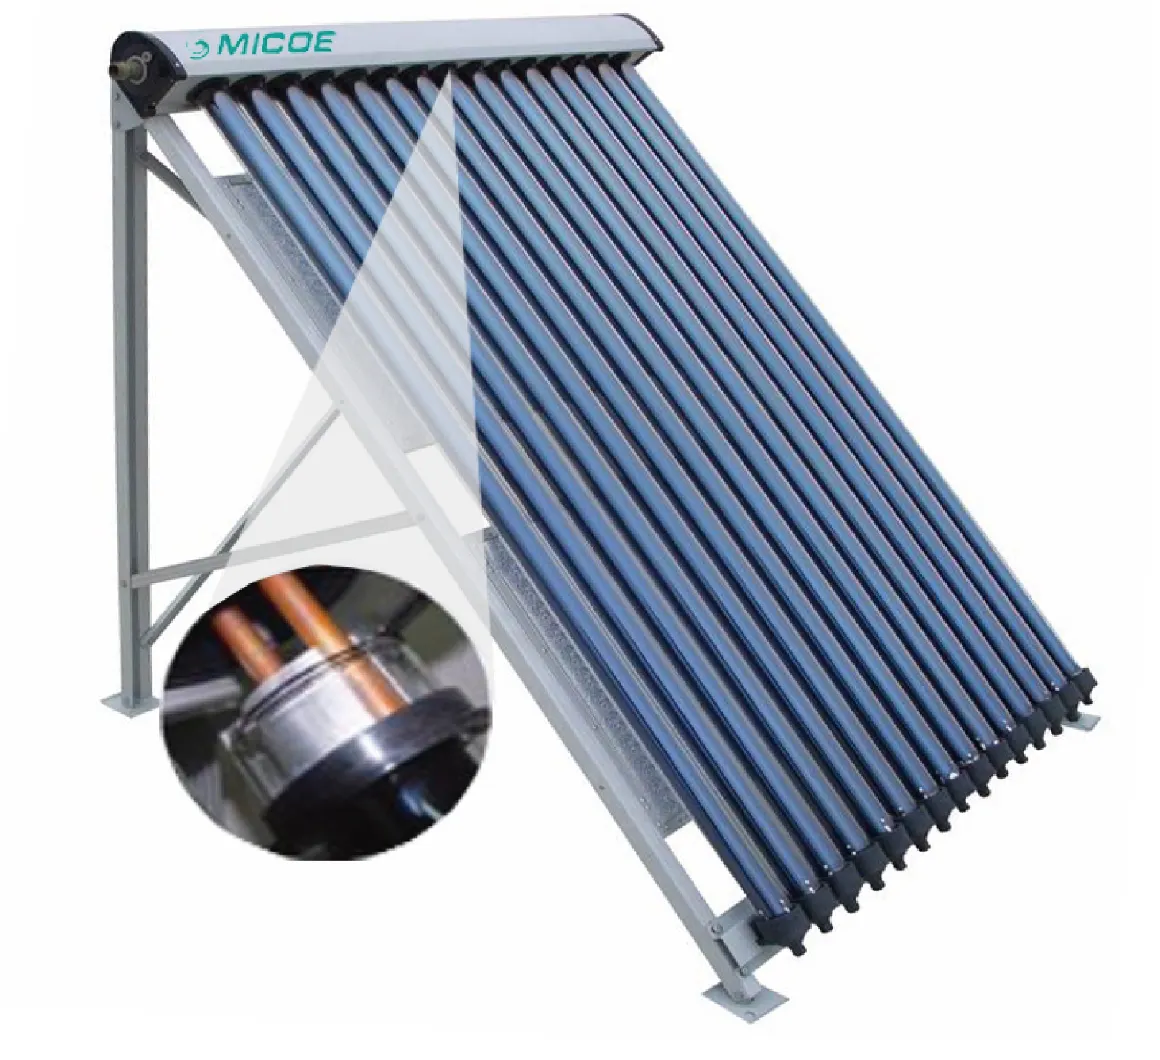 Micoe Factory OEM Vakuumröhren kollektor Sparen Sie Solarenergie kollektor Lieferant für Warmwasser